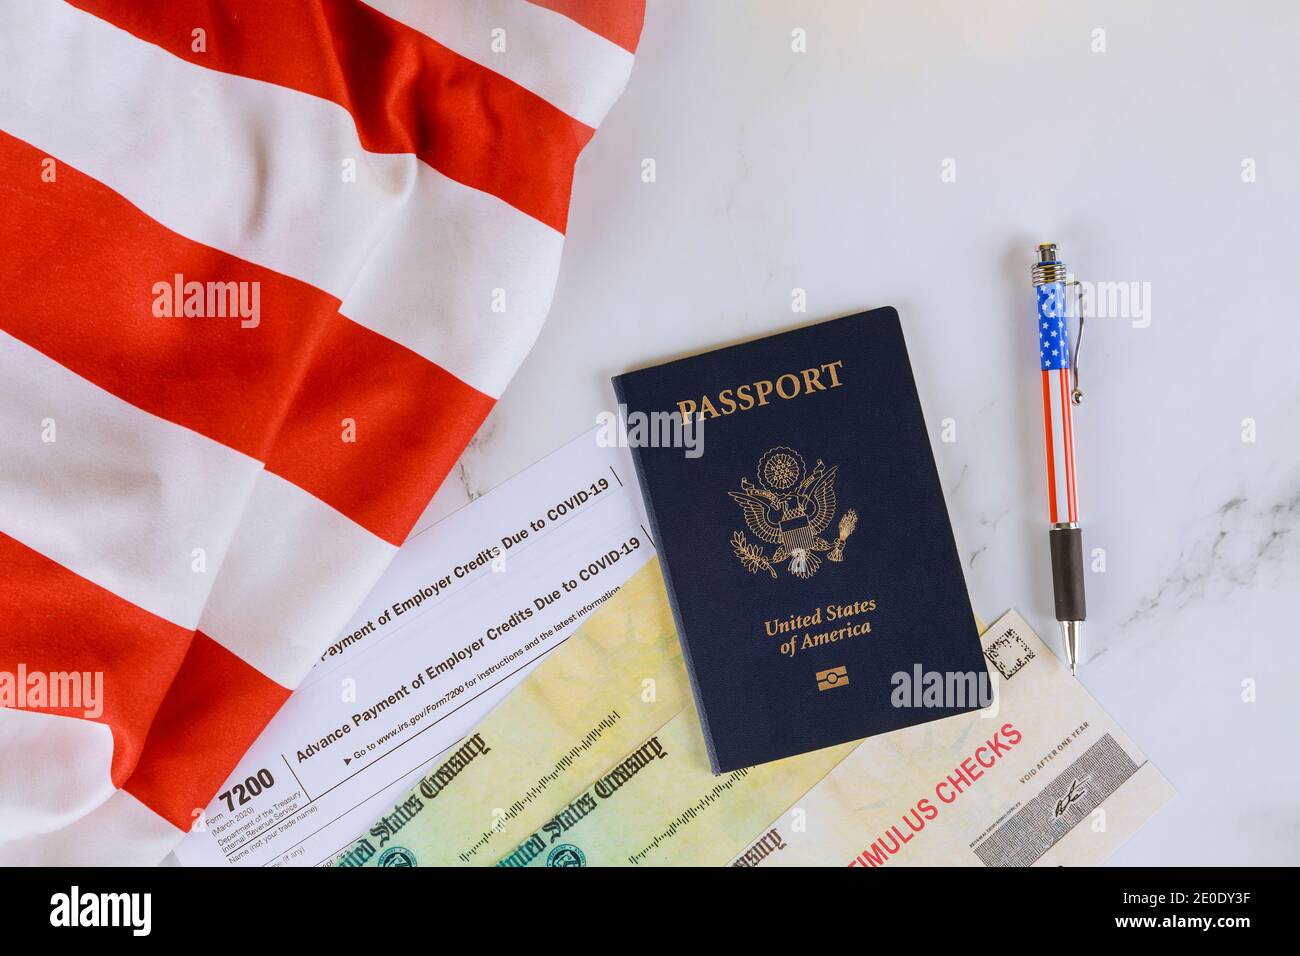 US-Flagge auf der Konjunkturbelebung finanzielle Entlastung Scheck an die Reisepass der USA Stockfoto